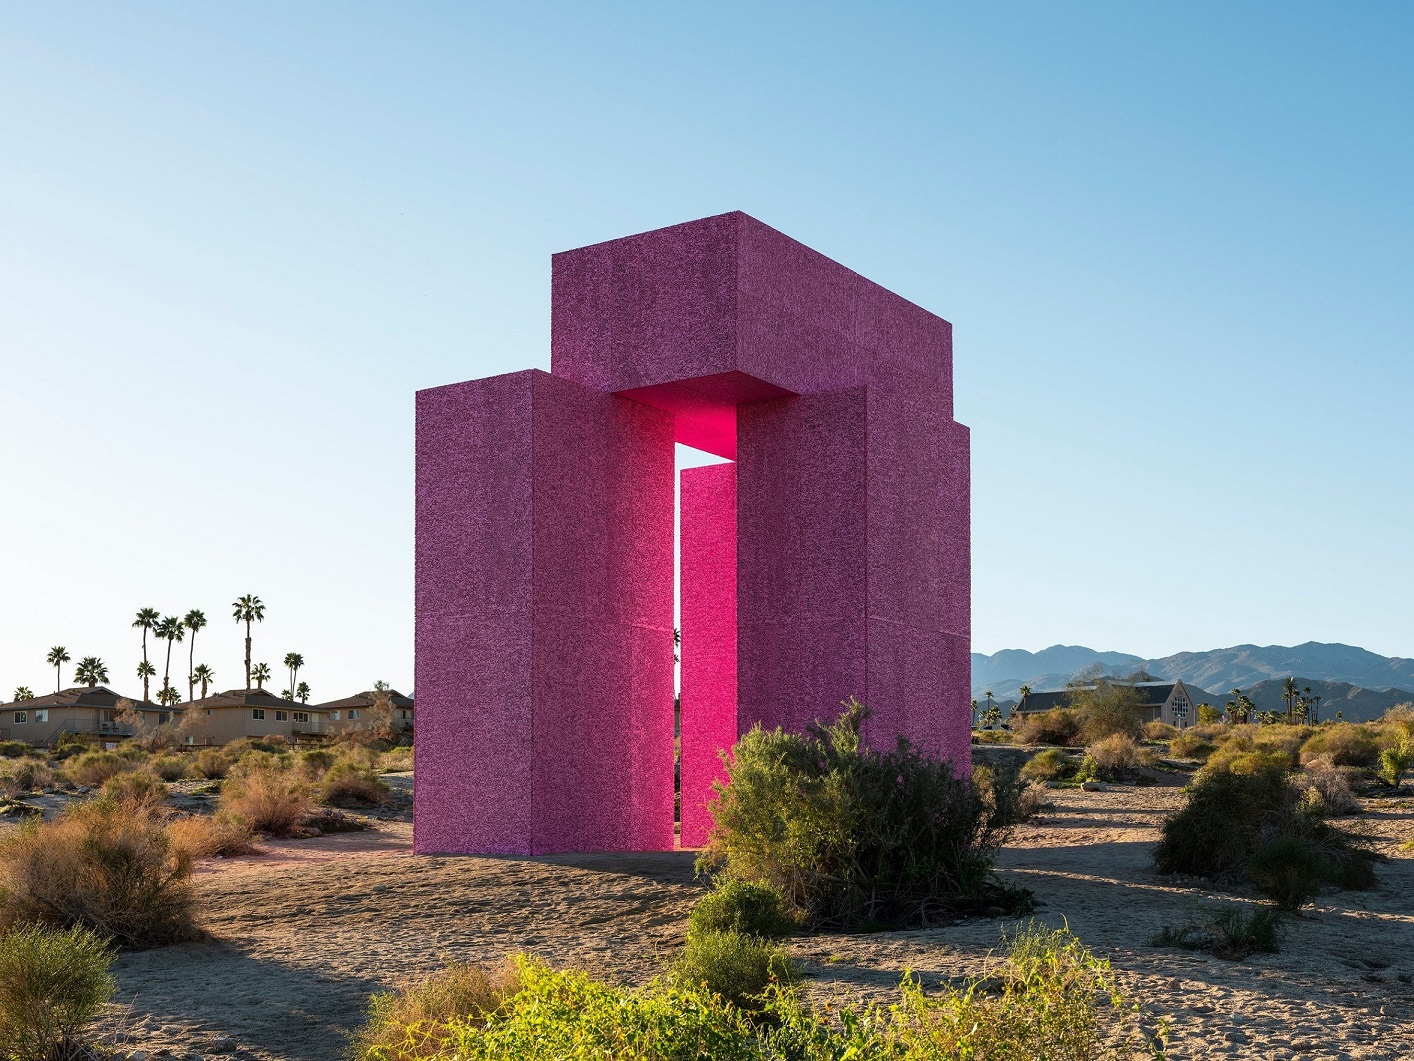 Large pink art installation in desert landscape